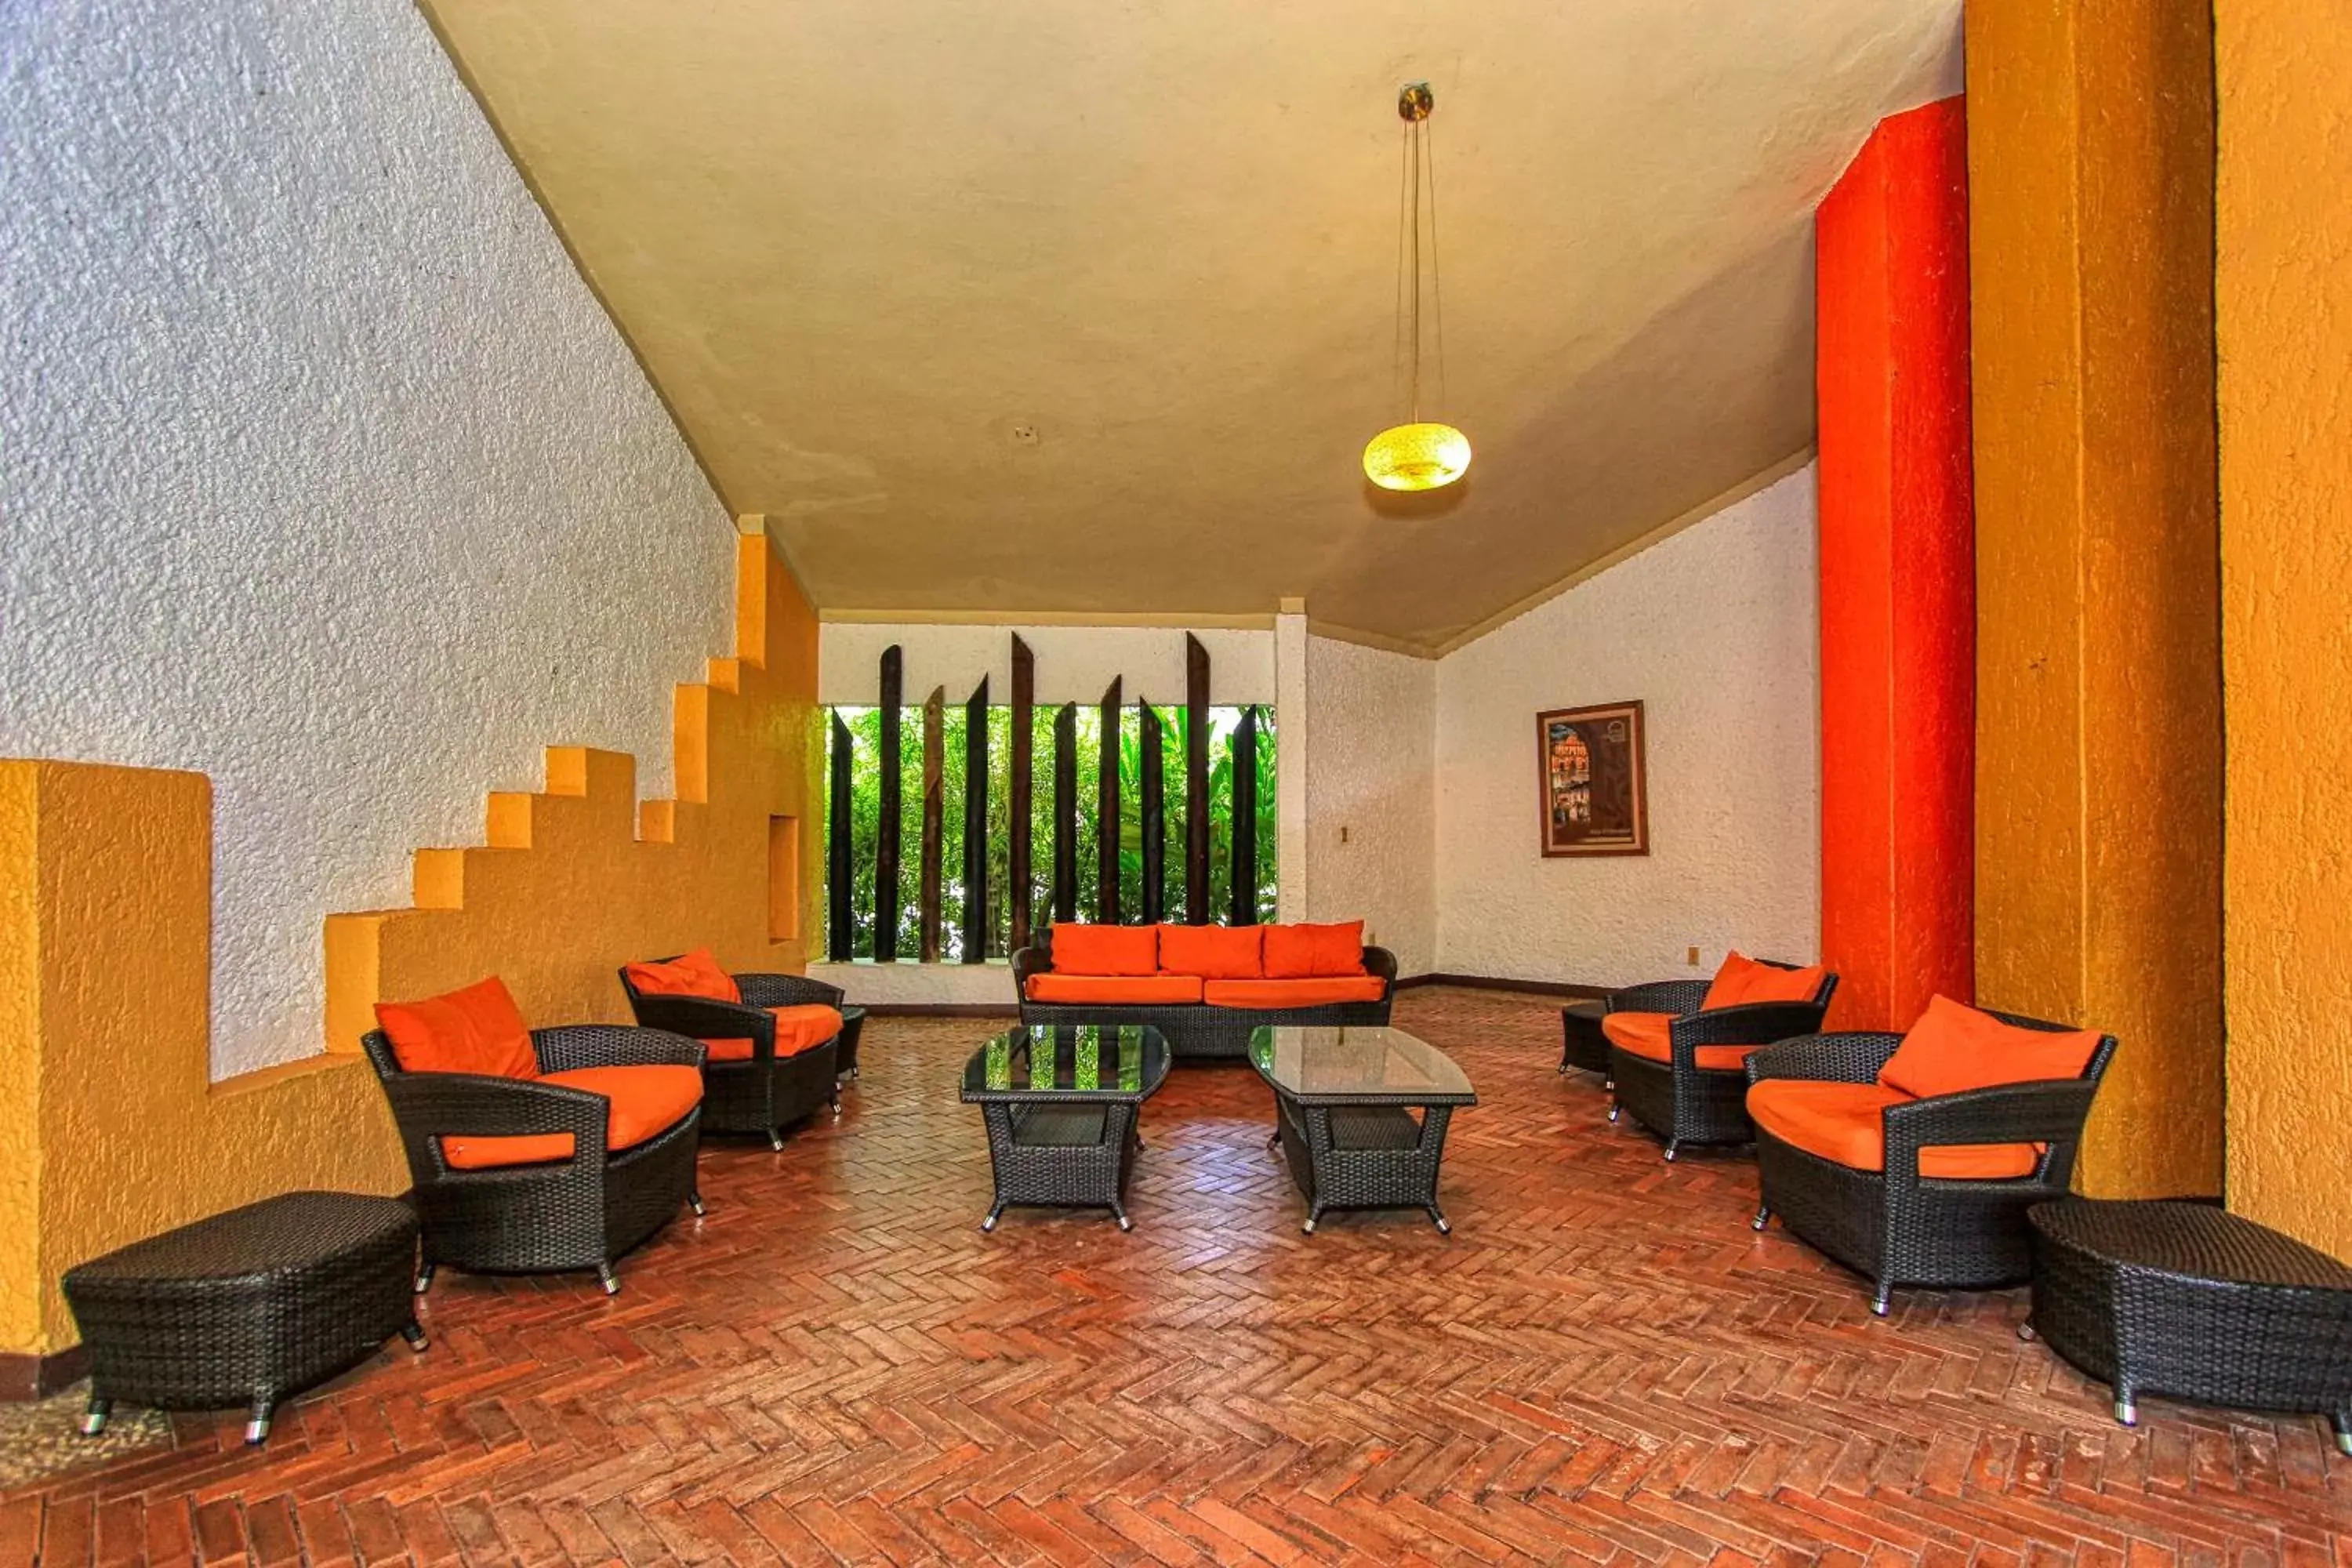 Lobby or reception in Hotel Ciudad Real Palenque